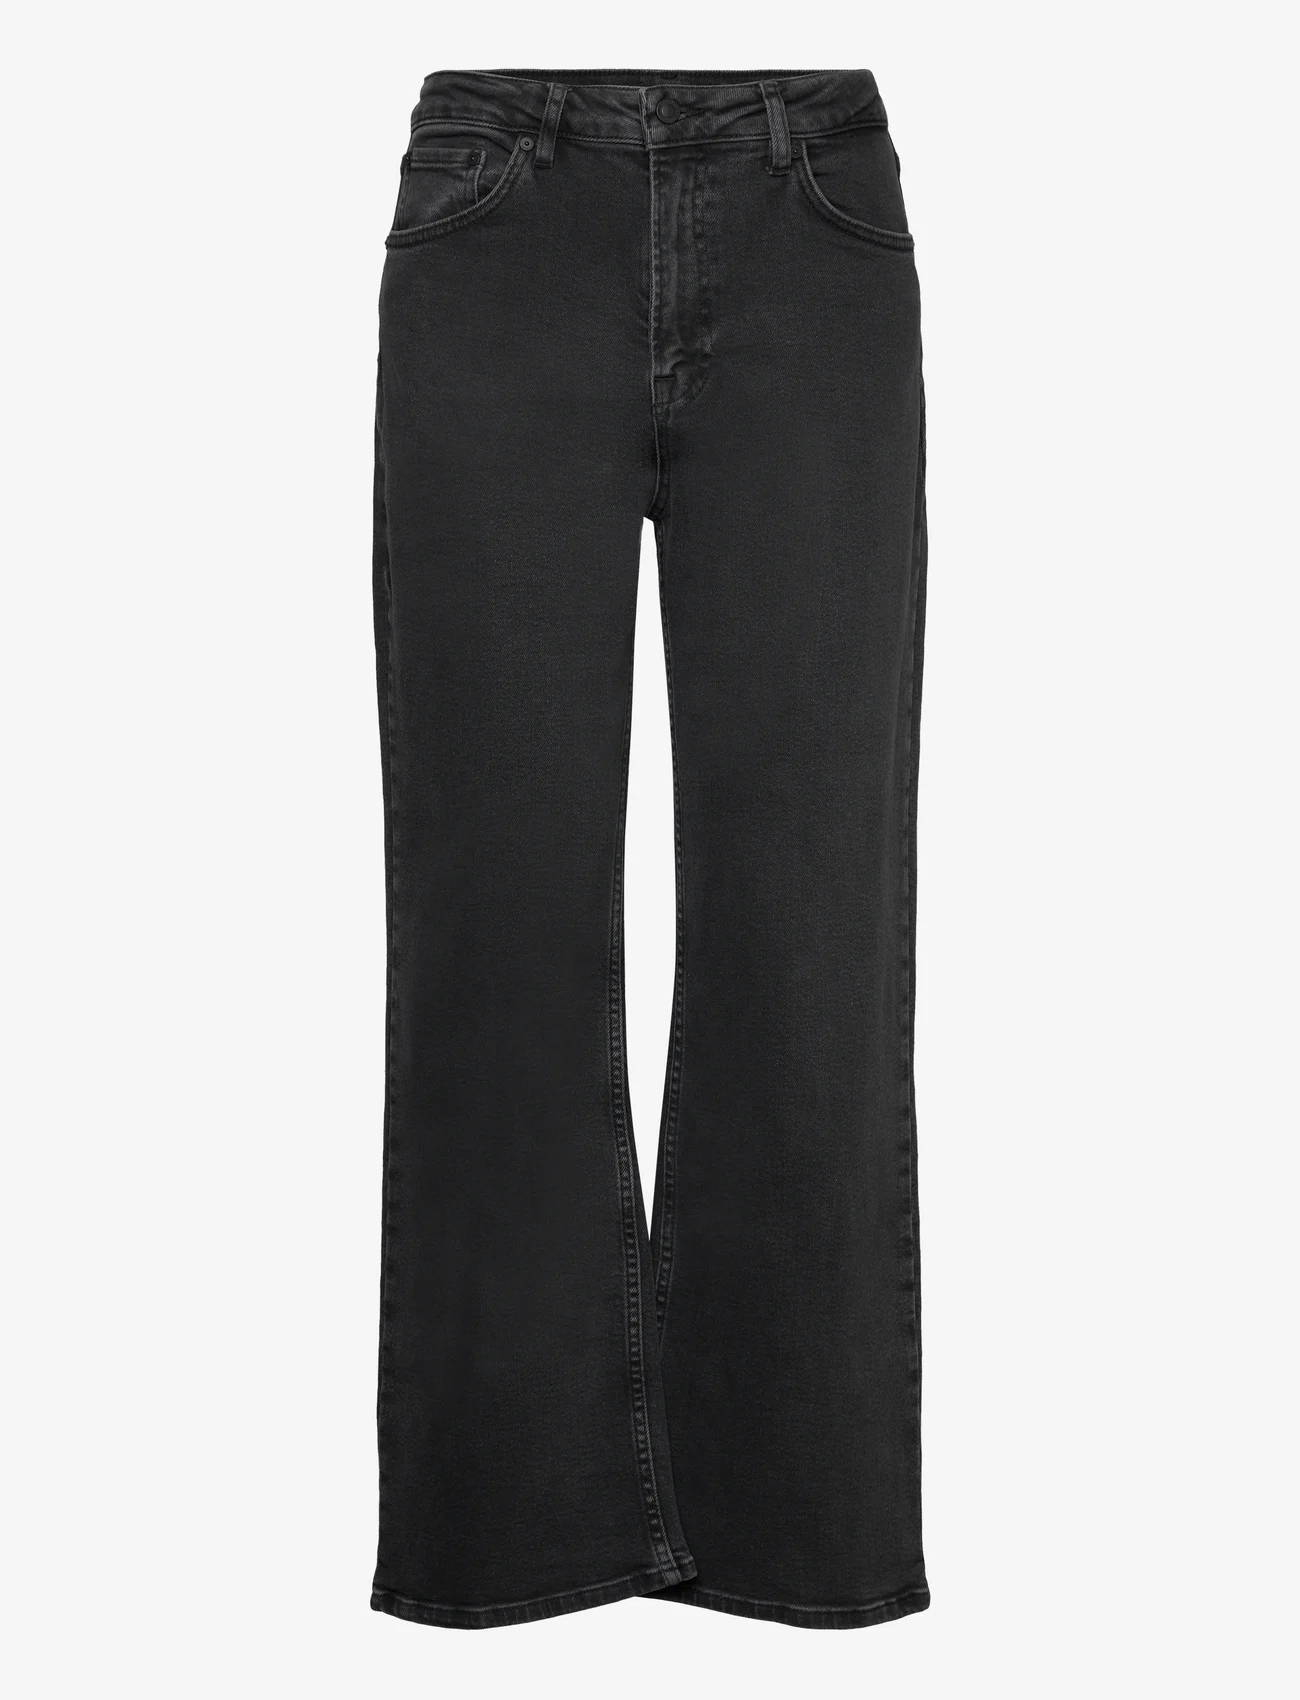 IVY Copenhagen - IVY-Brooke Jeans Wash Original Blac - jeans met wijde pijpen - black - 0